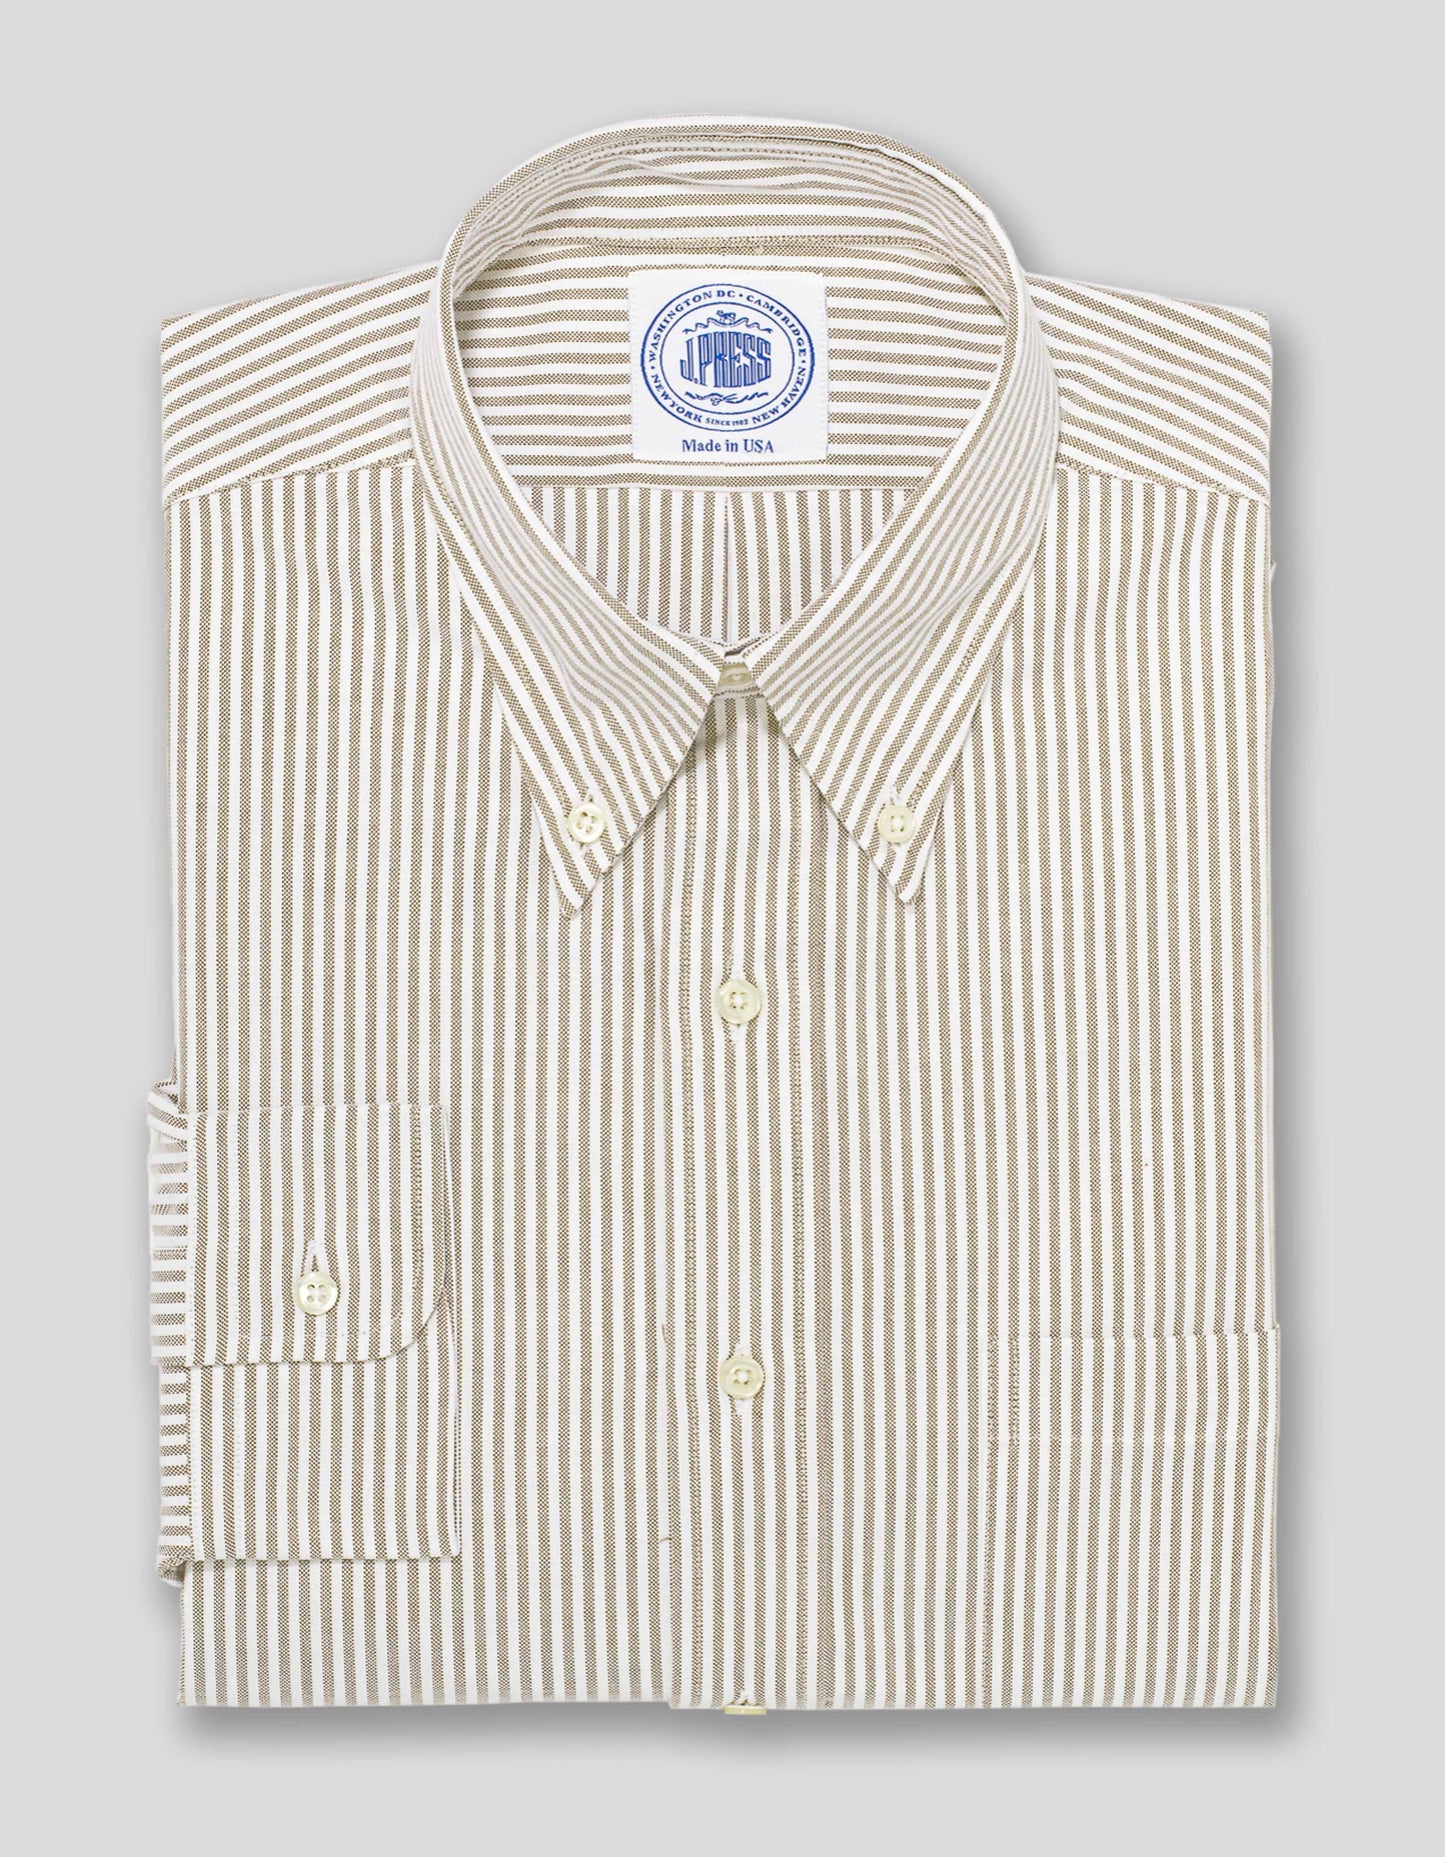 BROWN/WHITE OXFORD DRESS SHIRT